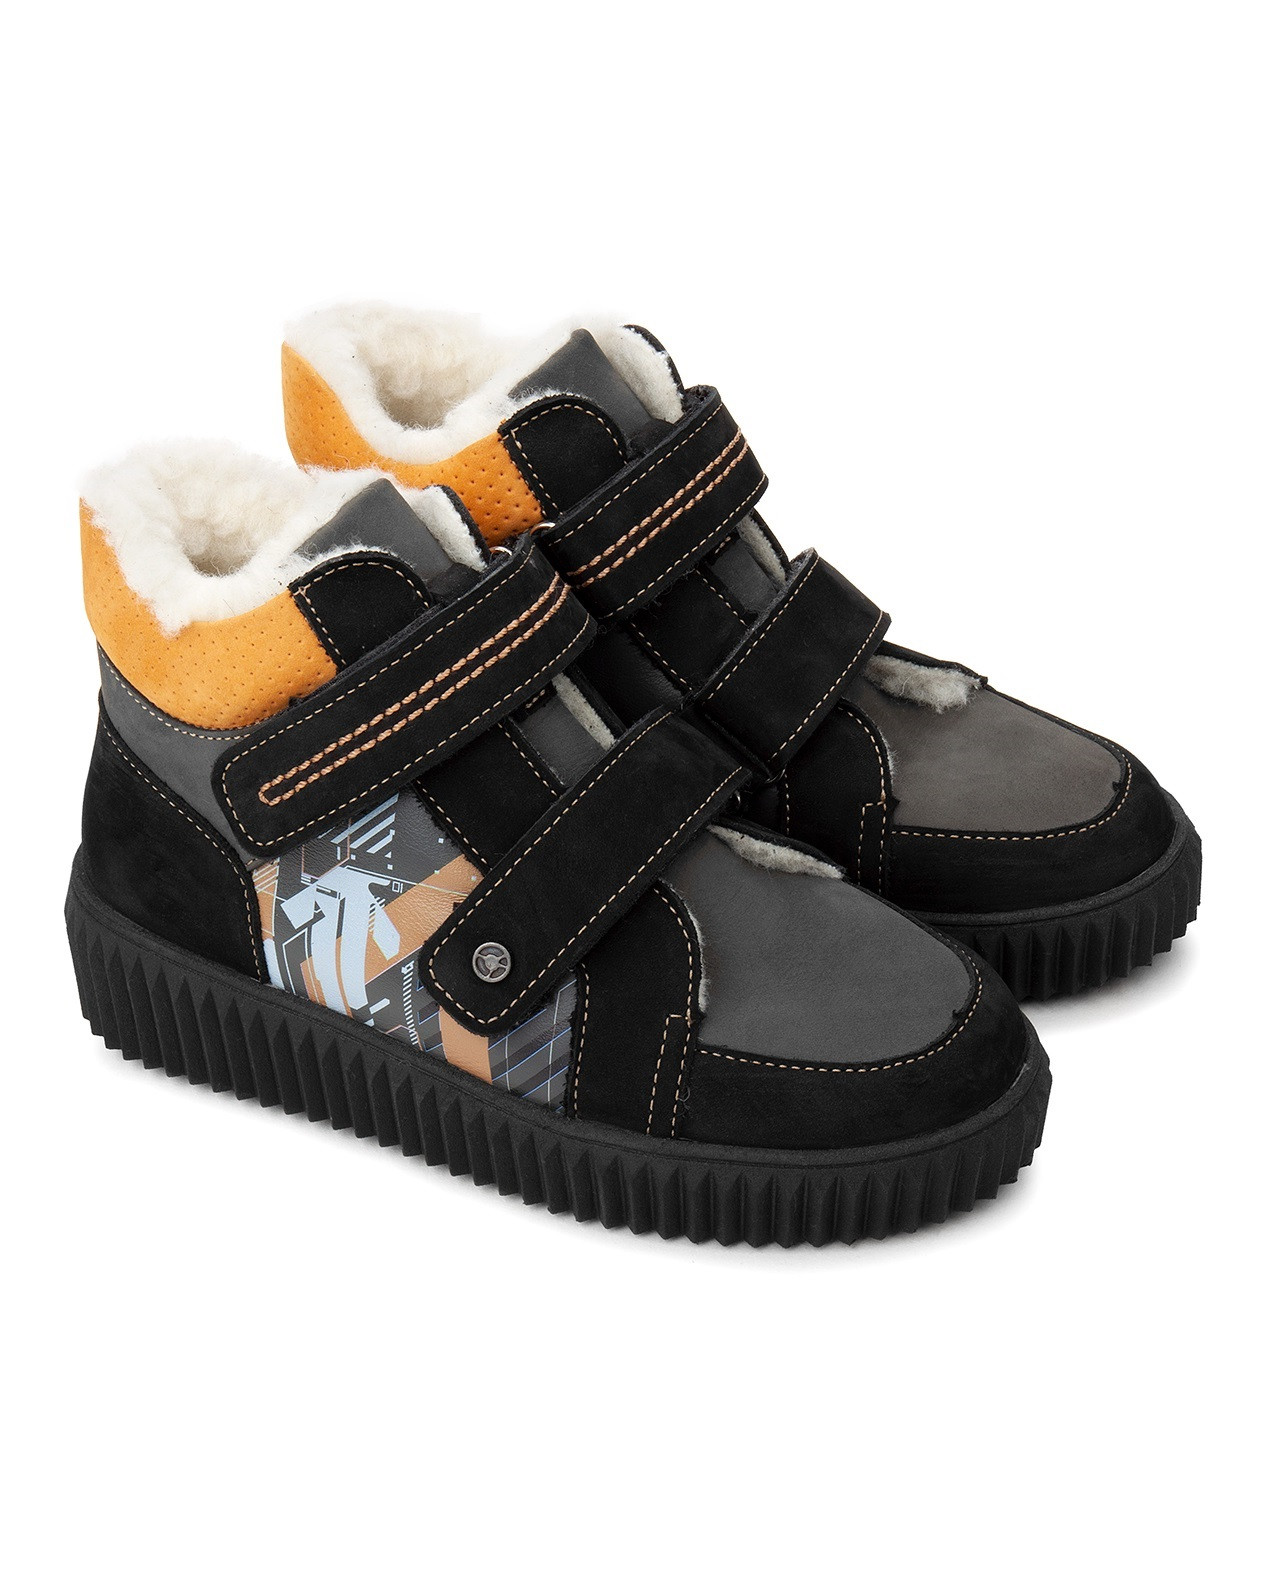 Ботинки детские Tapiboo КАИР терракот/принт-схема (80908, 33) ботинки детские tapiboo каир олива 80605 32